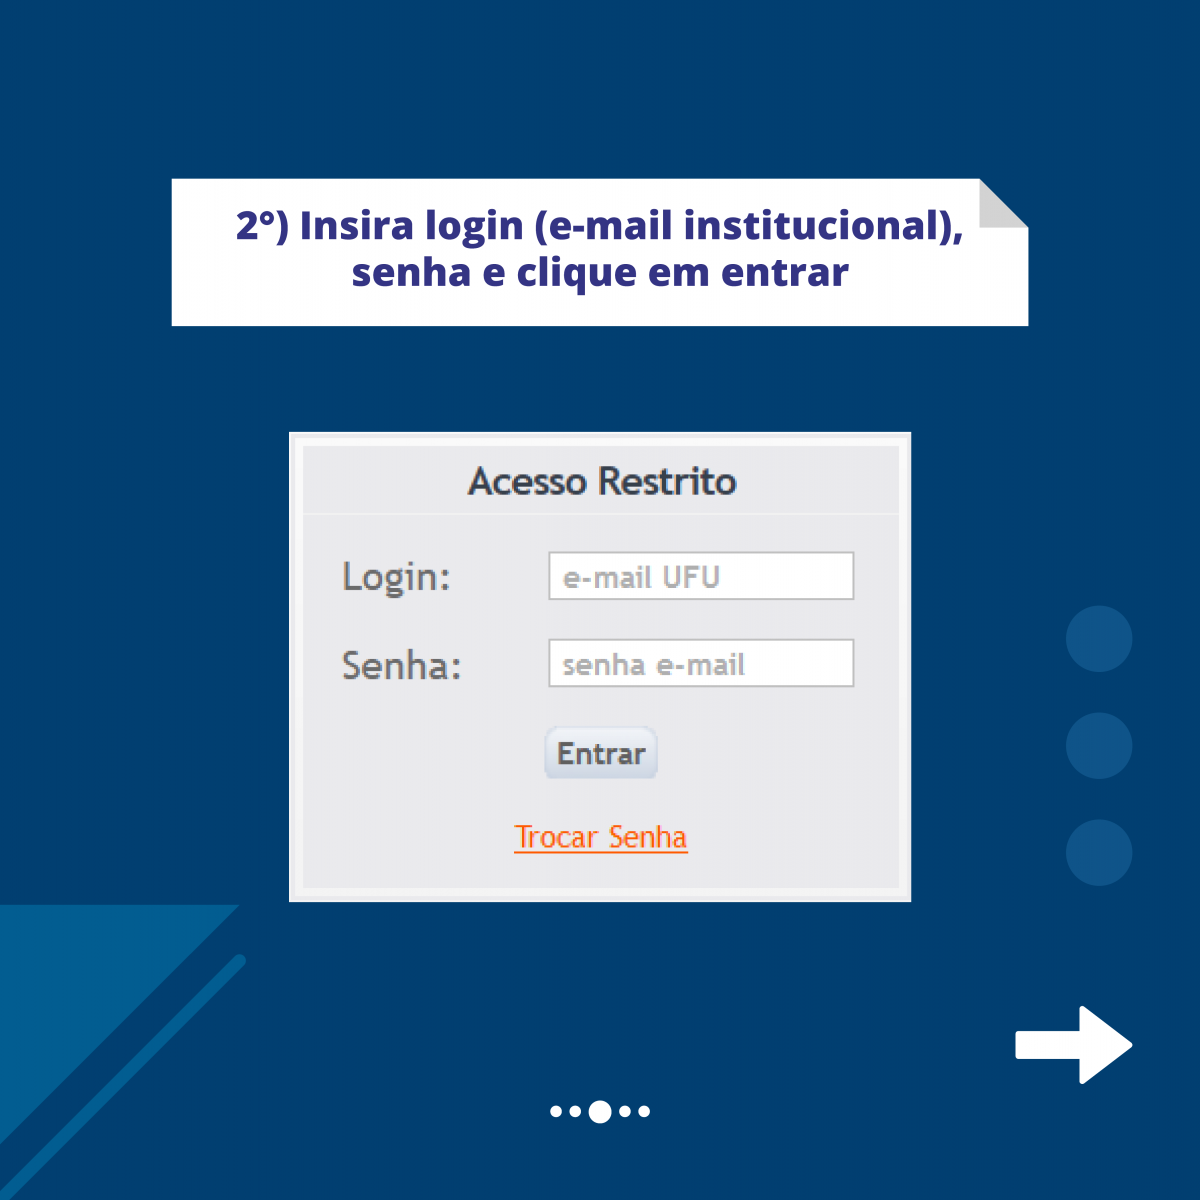 Fundo azul com print da tela do portal do Estudante e a escrita em azul: 2º insira login (e-mail institucional) senha e clique em entrar